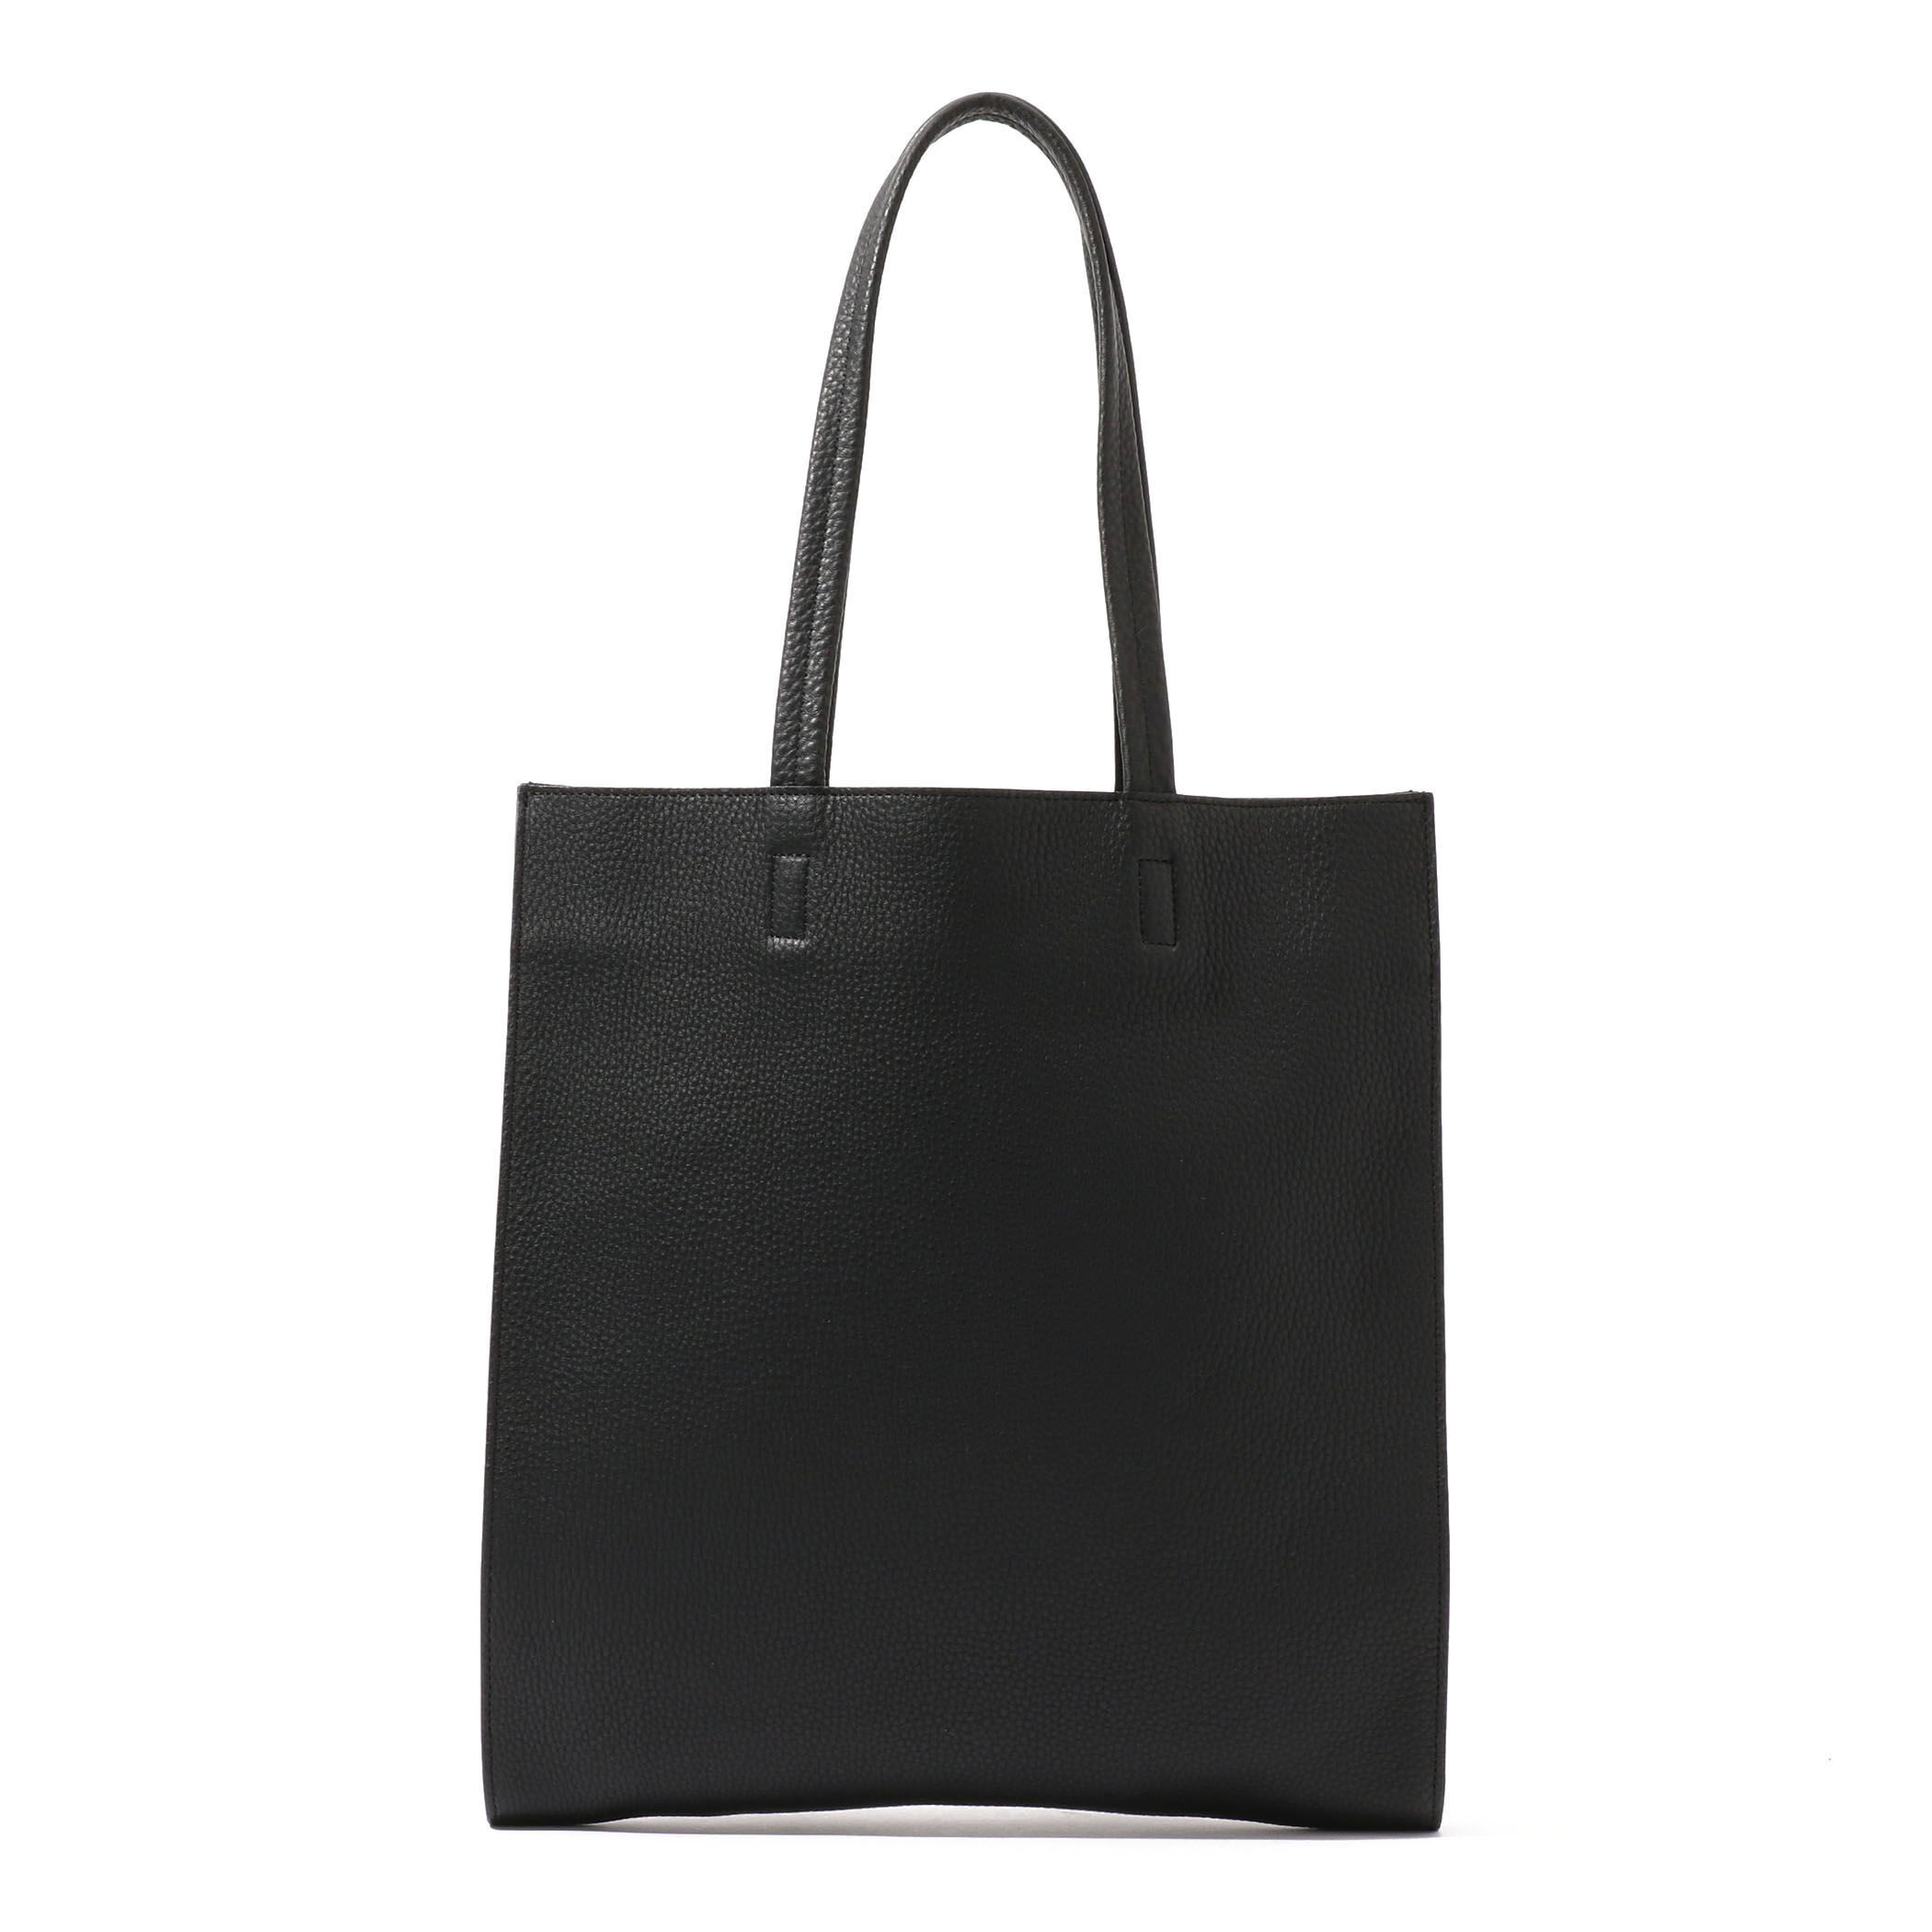 とても高級感のあるバッグです【美品】TOMORROWLAND トートバッグ 鍵付 フラップレザー グレー 黒